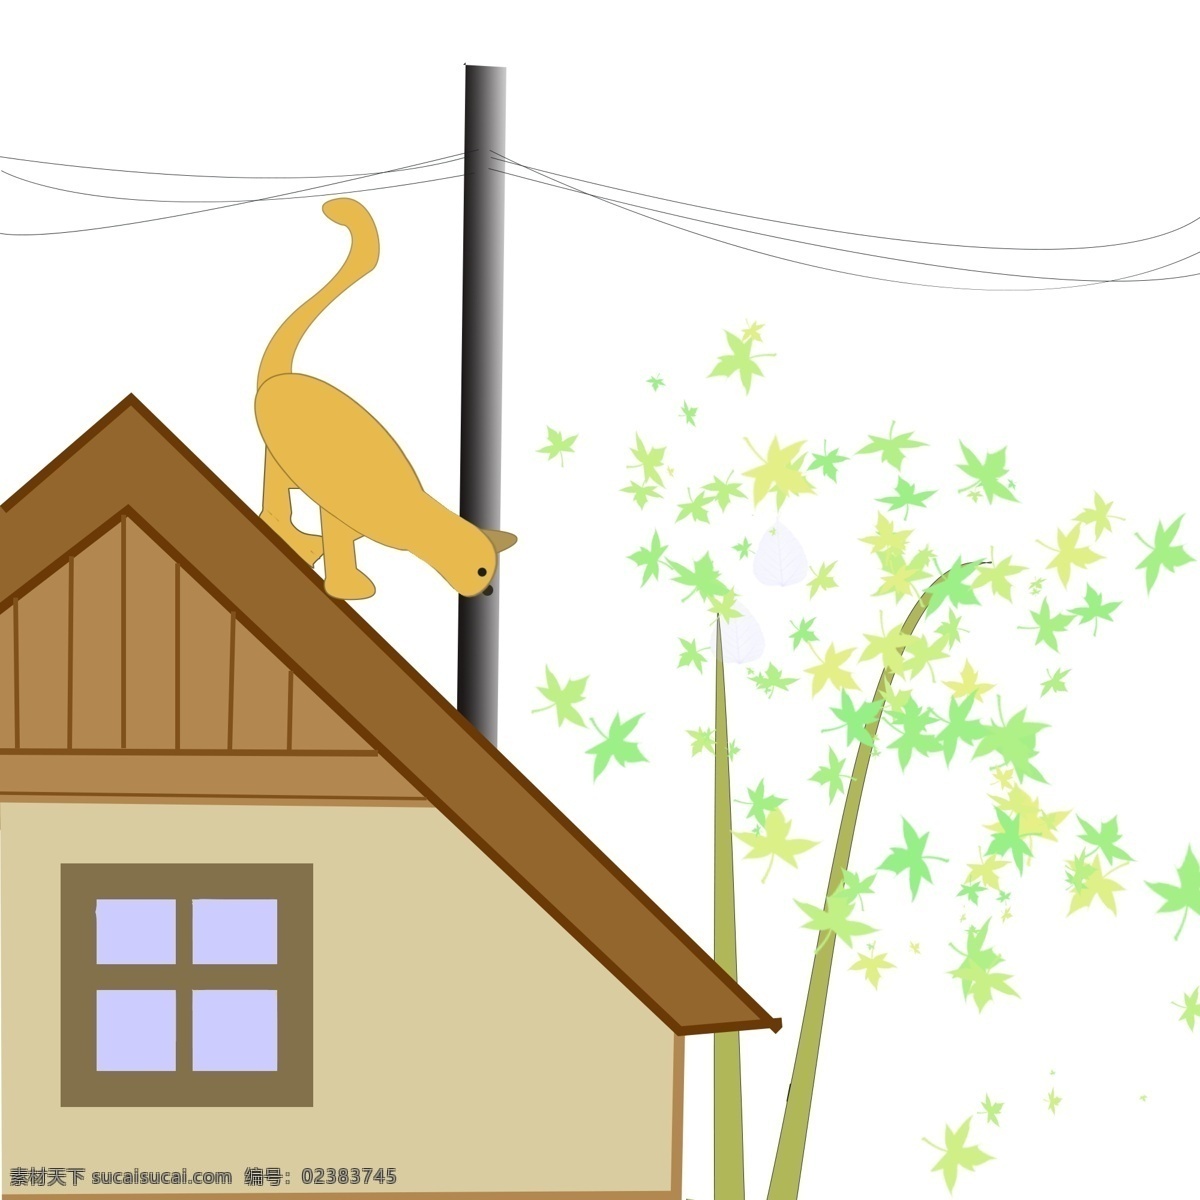 猫咪 房子 创意 卡通 手绘 猫咪和房子 手绘房子和猫 手绘画 小猫 装饰